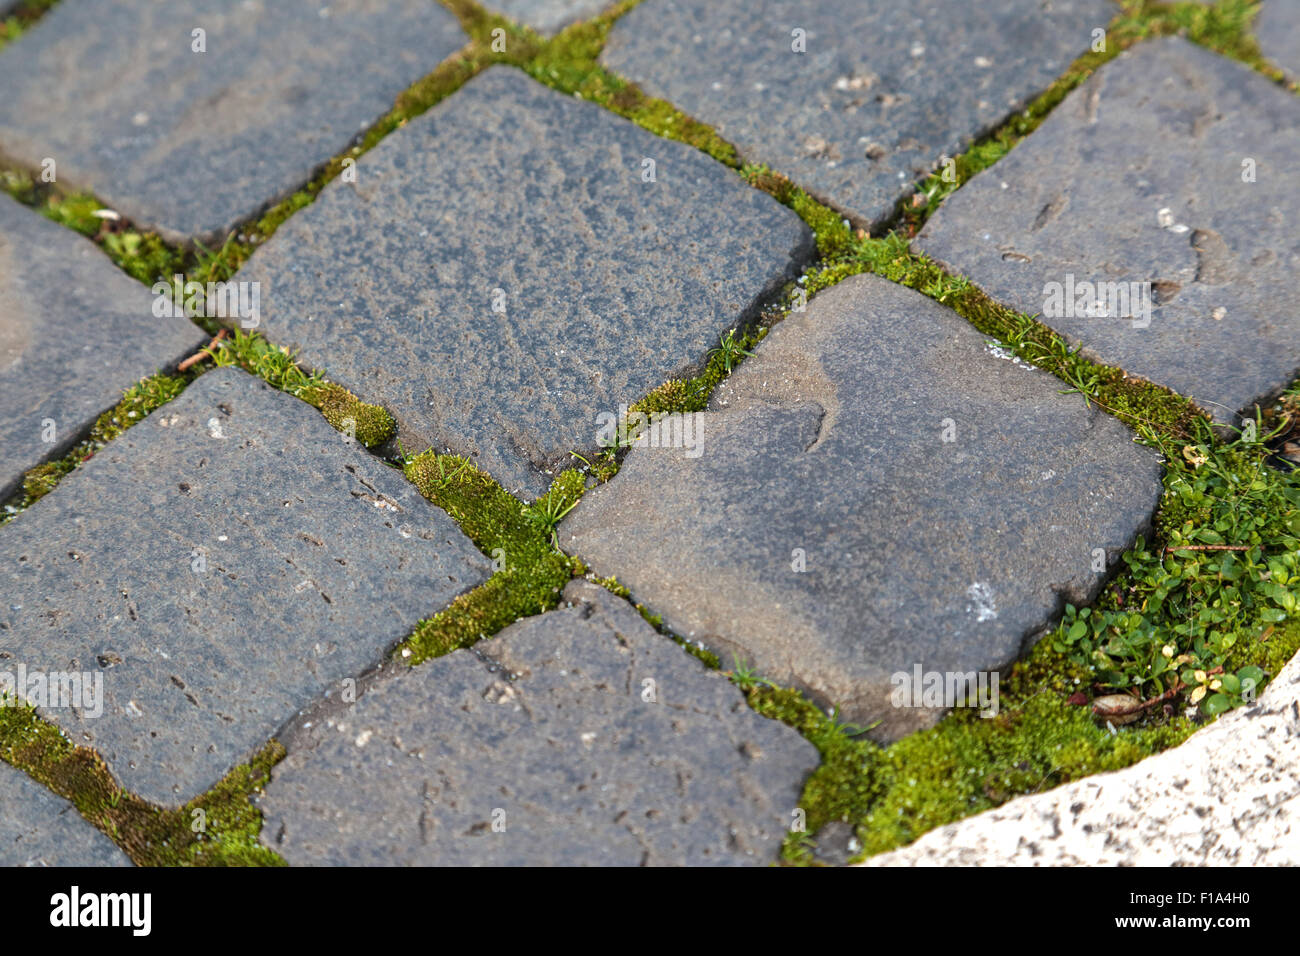 Dettagli di sanpietrini, un tipico tipo di pavimentazione trovata in Rome, Italia e fatta di pietre smussato di basalto nero Foto Stock